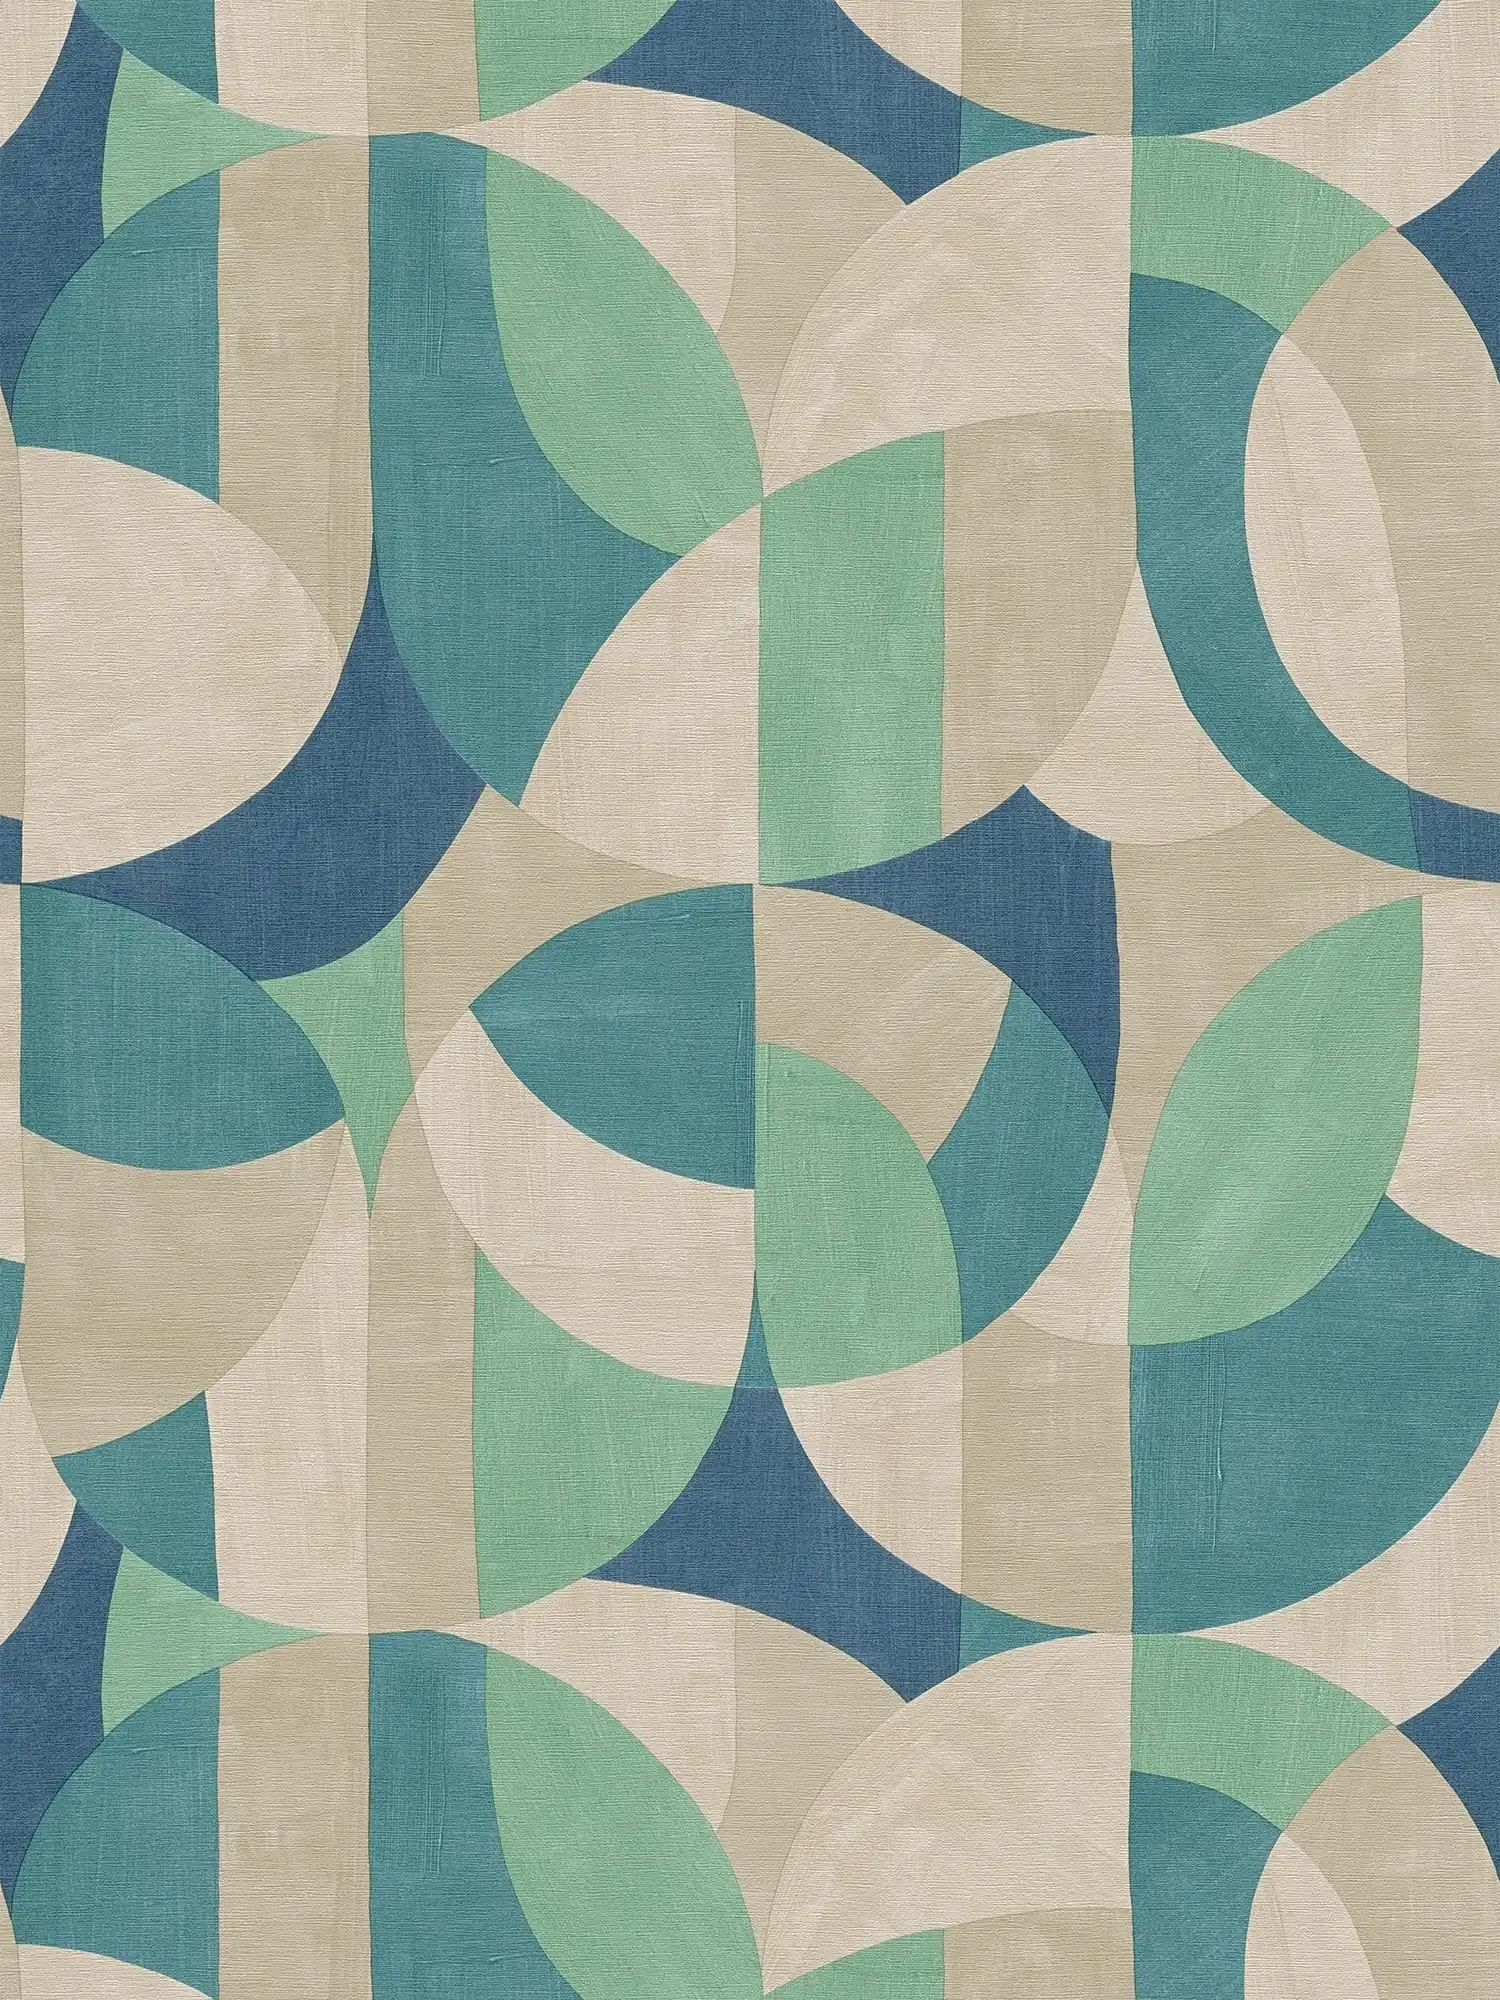         papier peint en papier intissé graphique dans le style Bauhaus - crème, beige, bleu
    